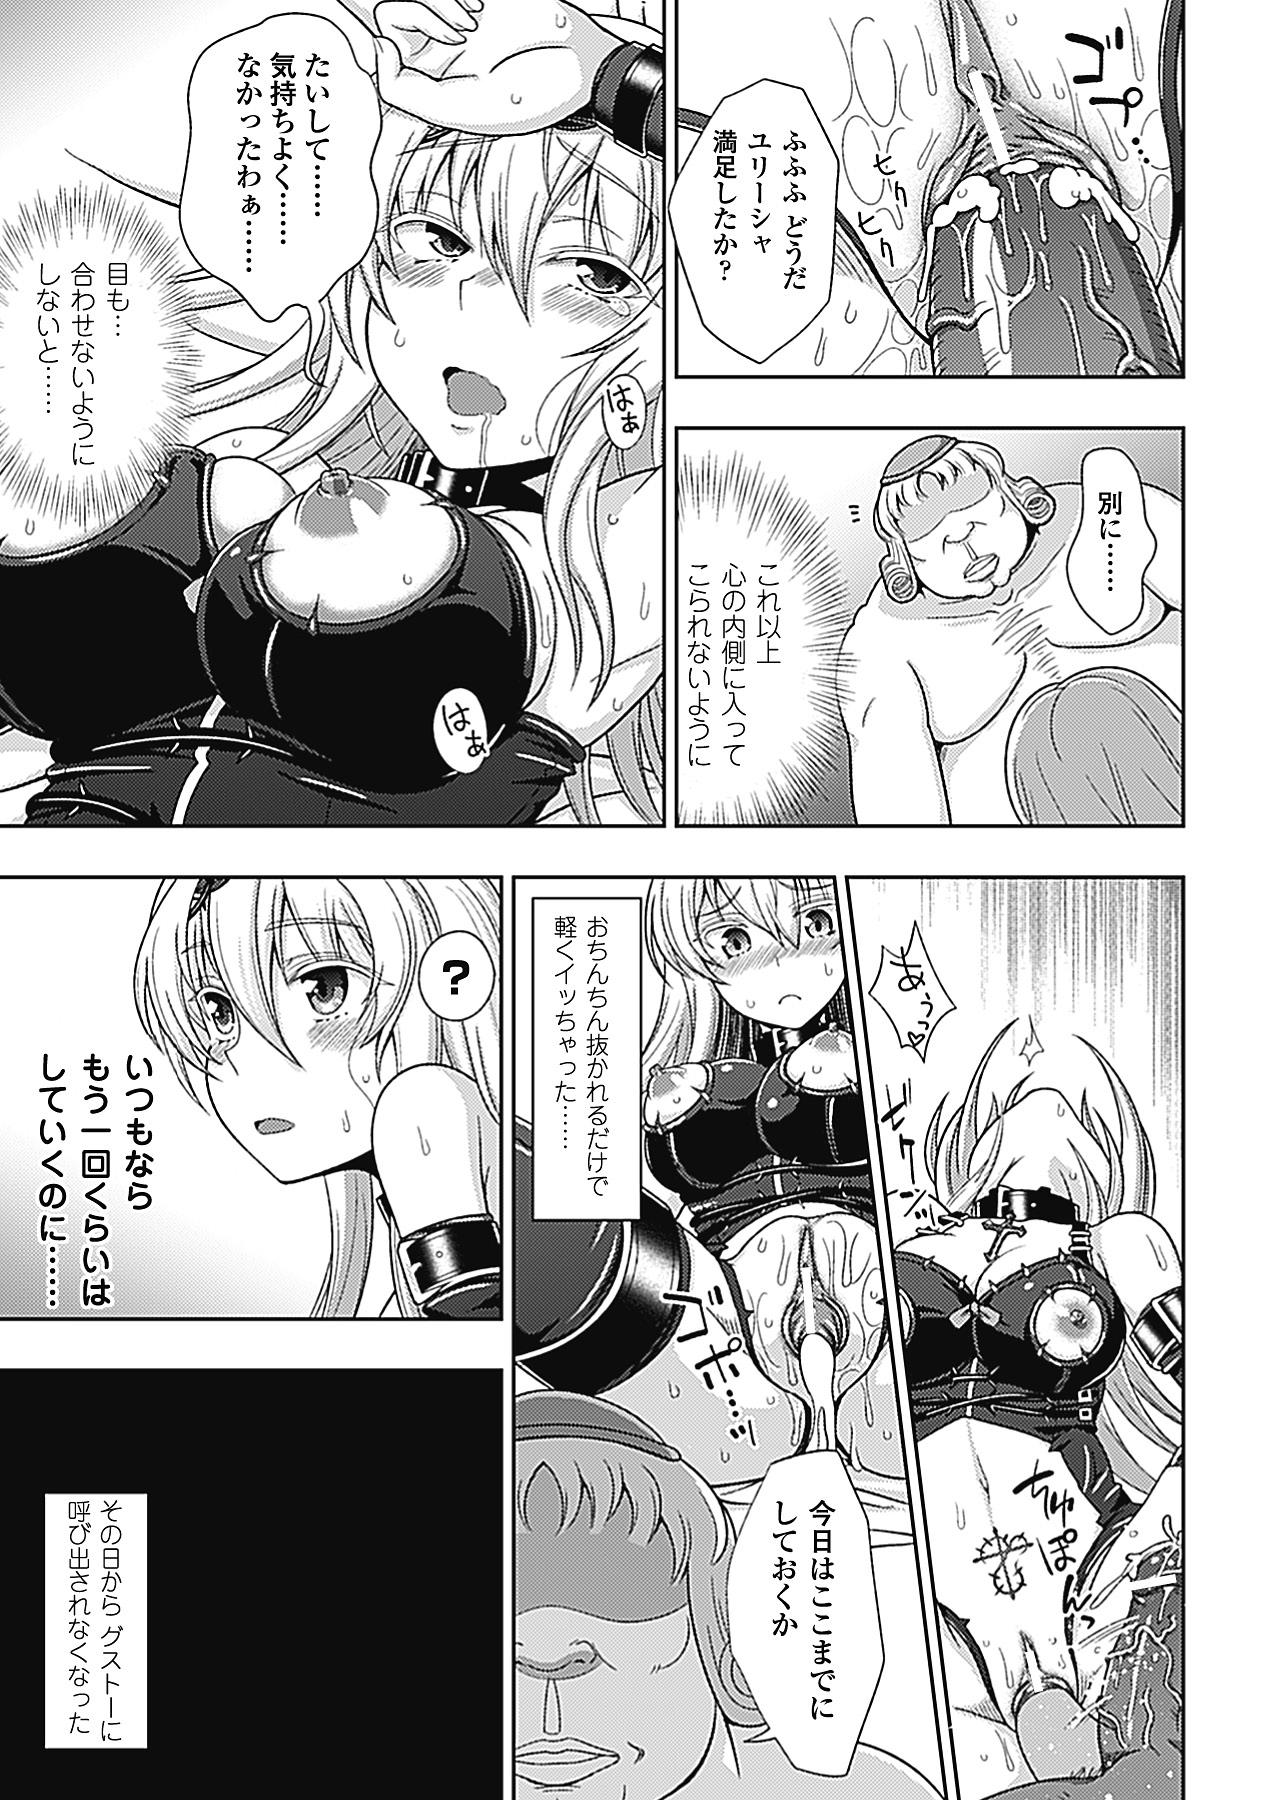 Sixtynine Megami Crisis 2 - Taimanin asagi Buttplug - Page 6